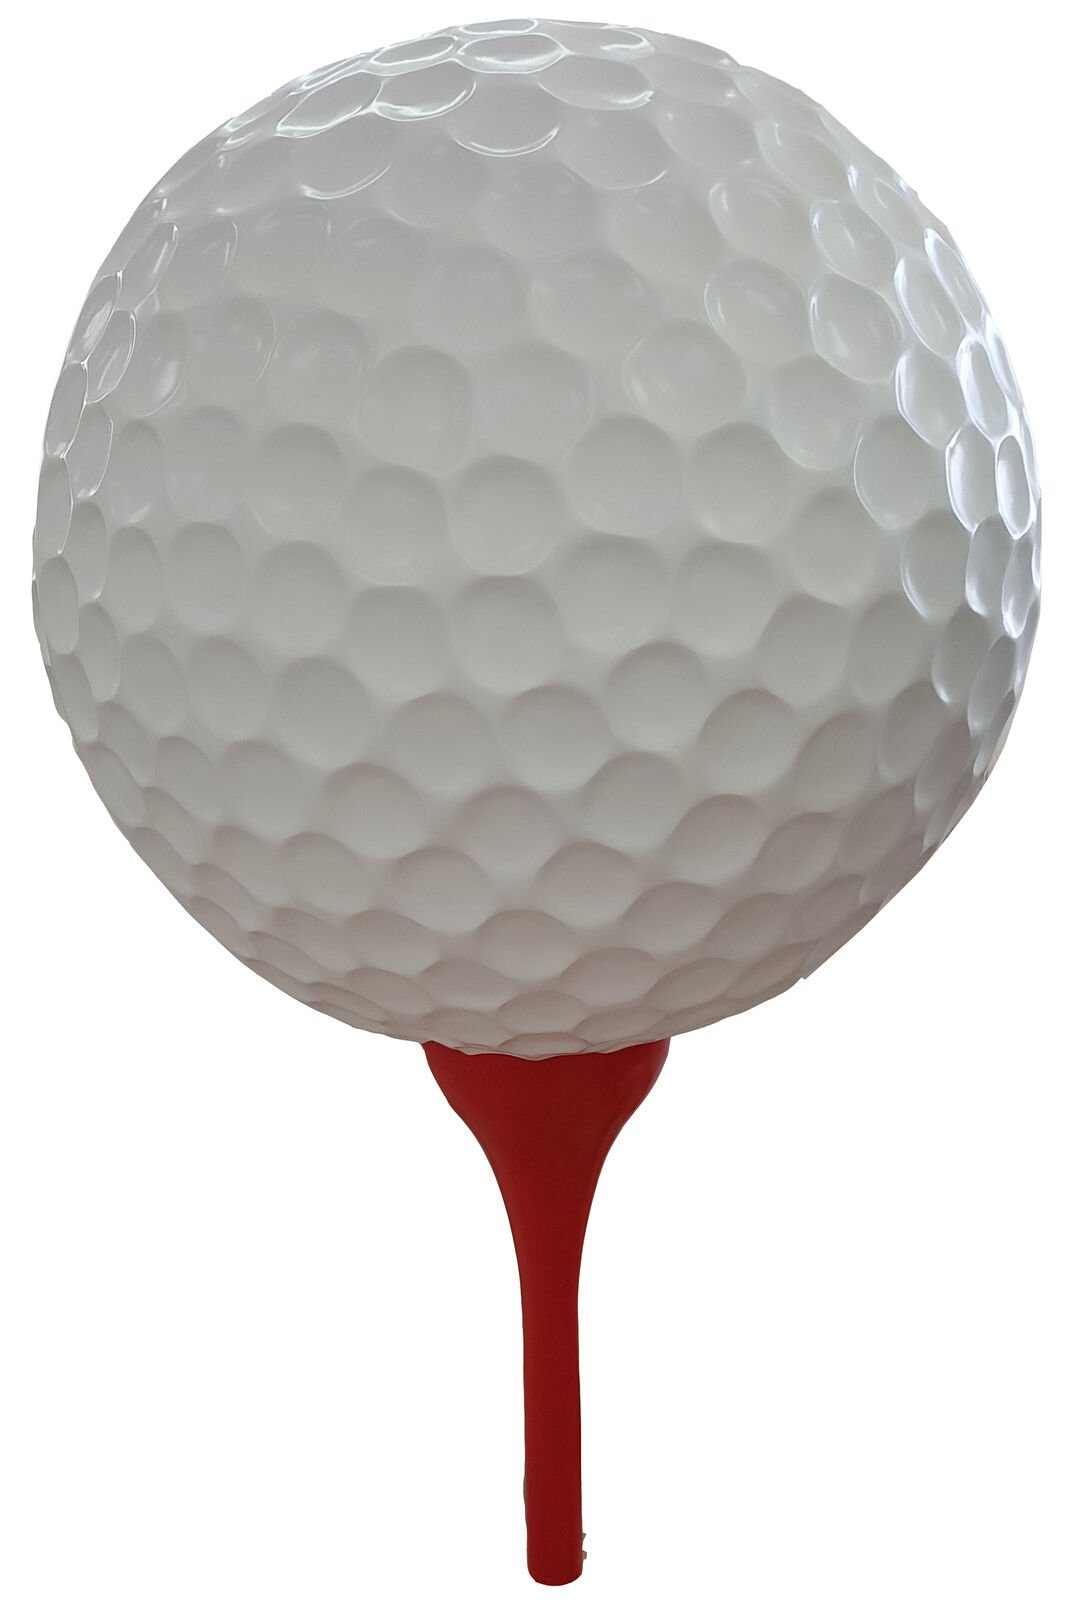 JVmoebel Gartenfigur, Design Figuren Moderne Dekorationen Garten Figuren Golf Ball